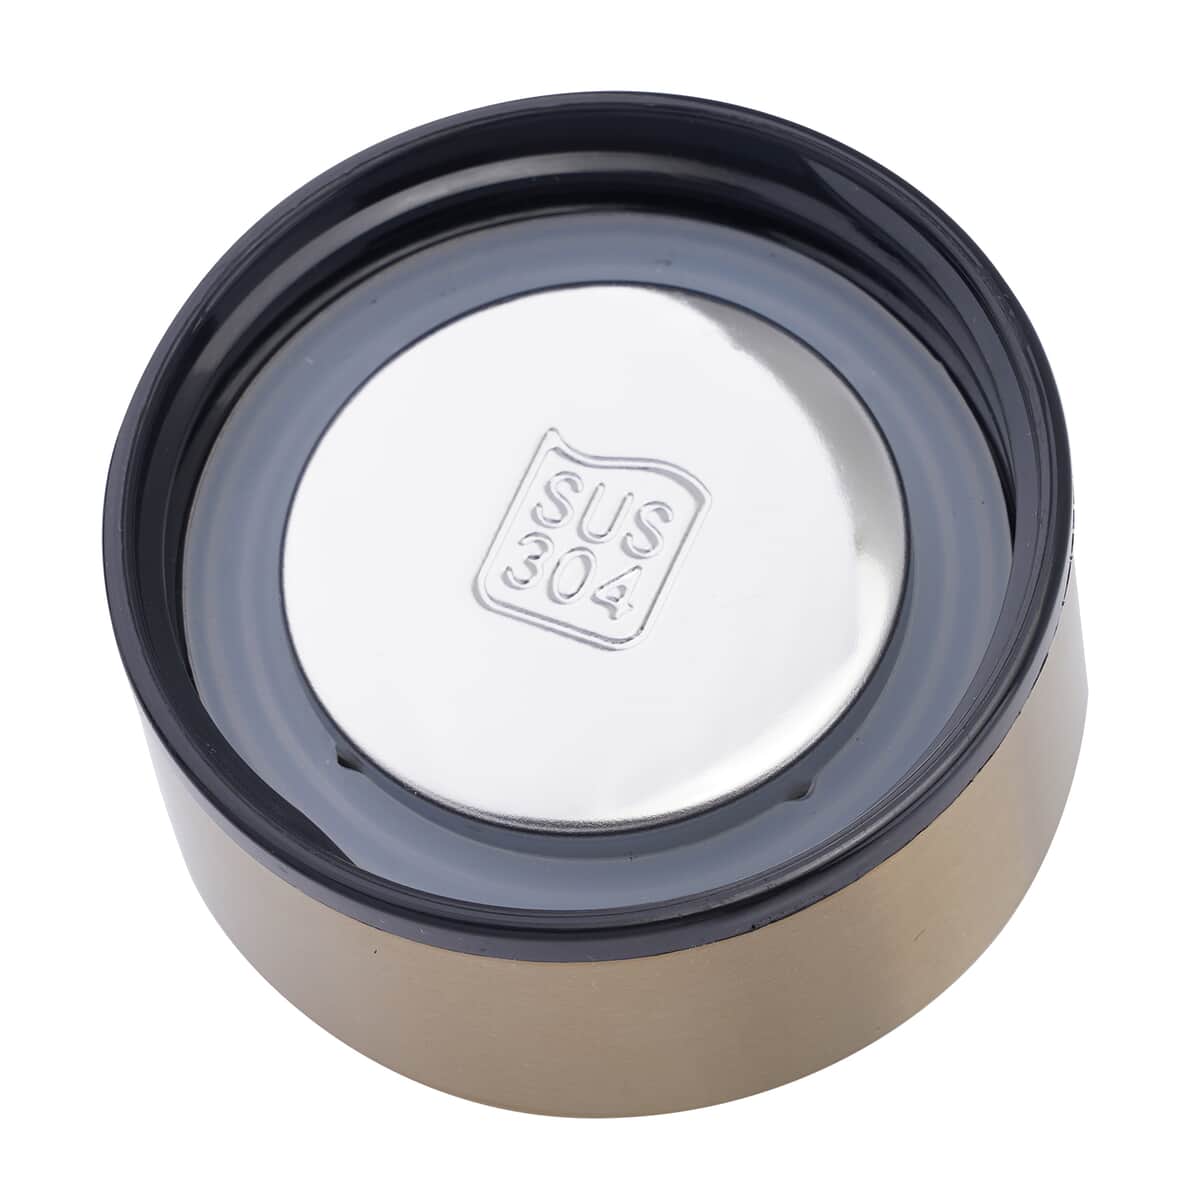 Elite Shungite Filter Infuser and Temperature Sensor Smart Water Bottle (LED Display, Long Filter) - Gold image number 4